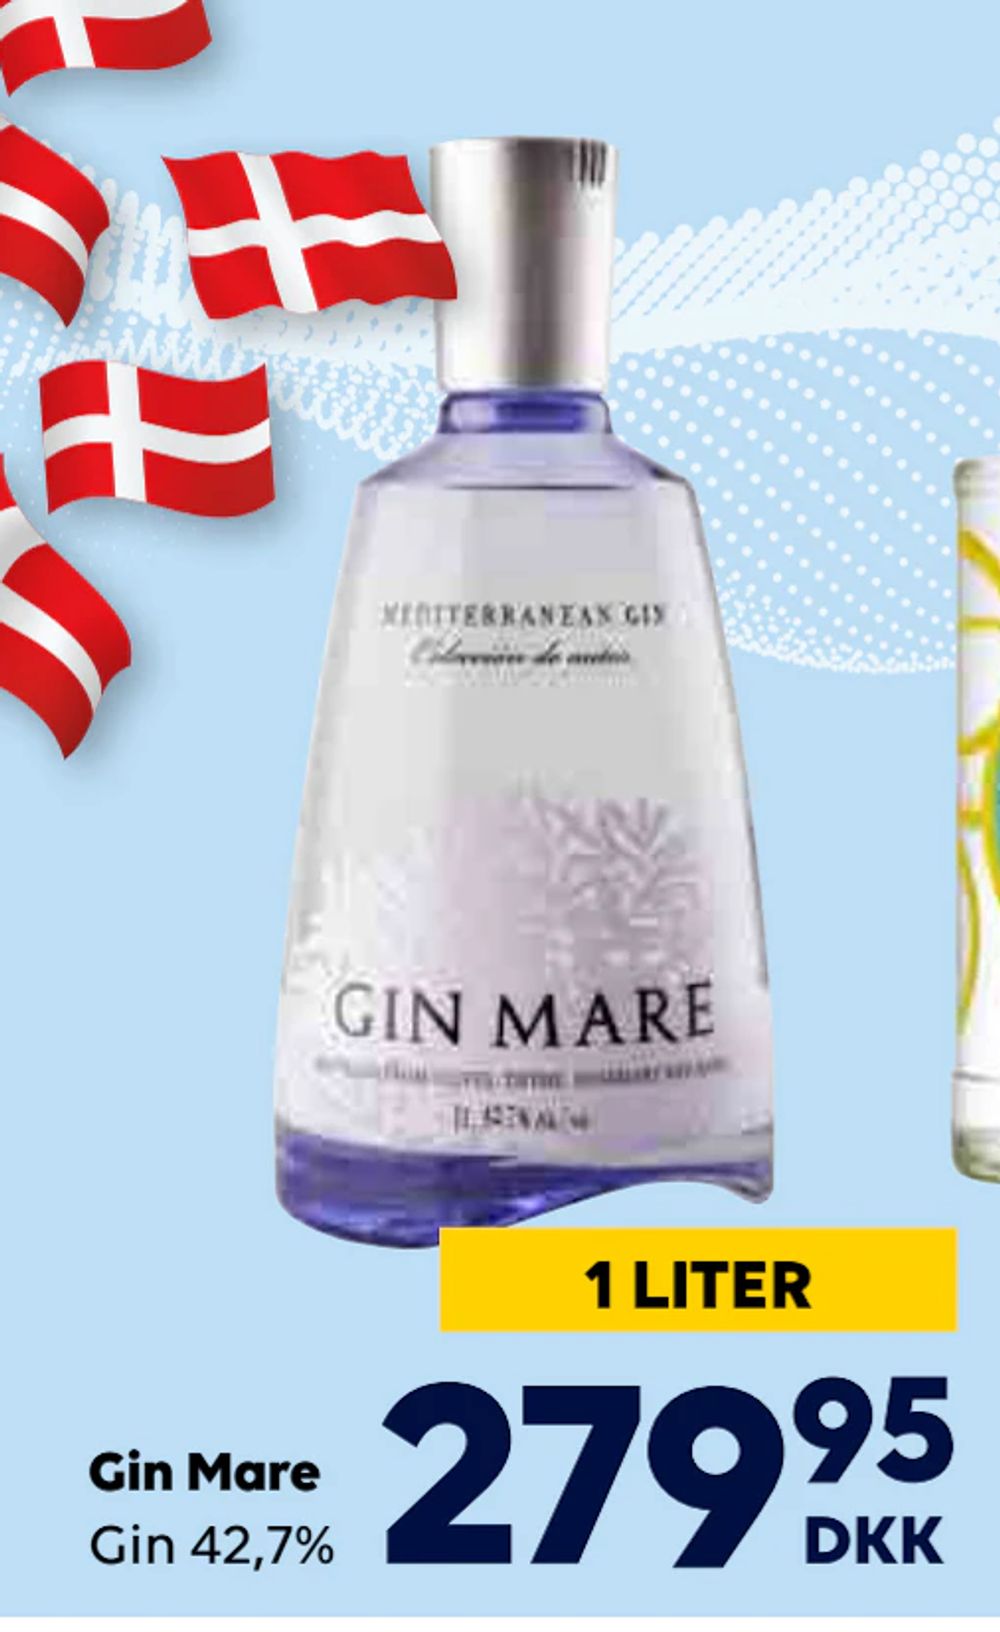 Tilbud på Gin Mare fra BorderShop til 279,95 kr.